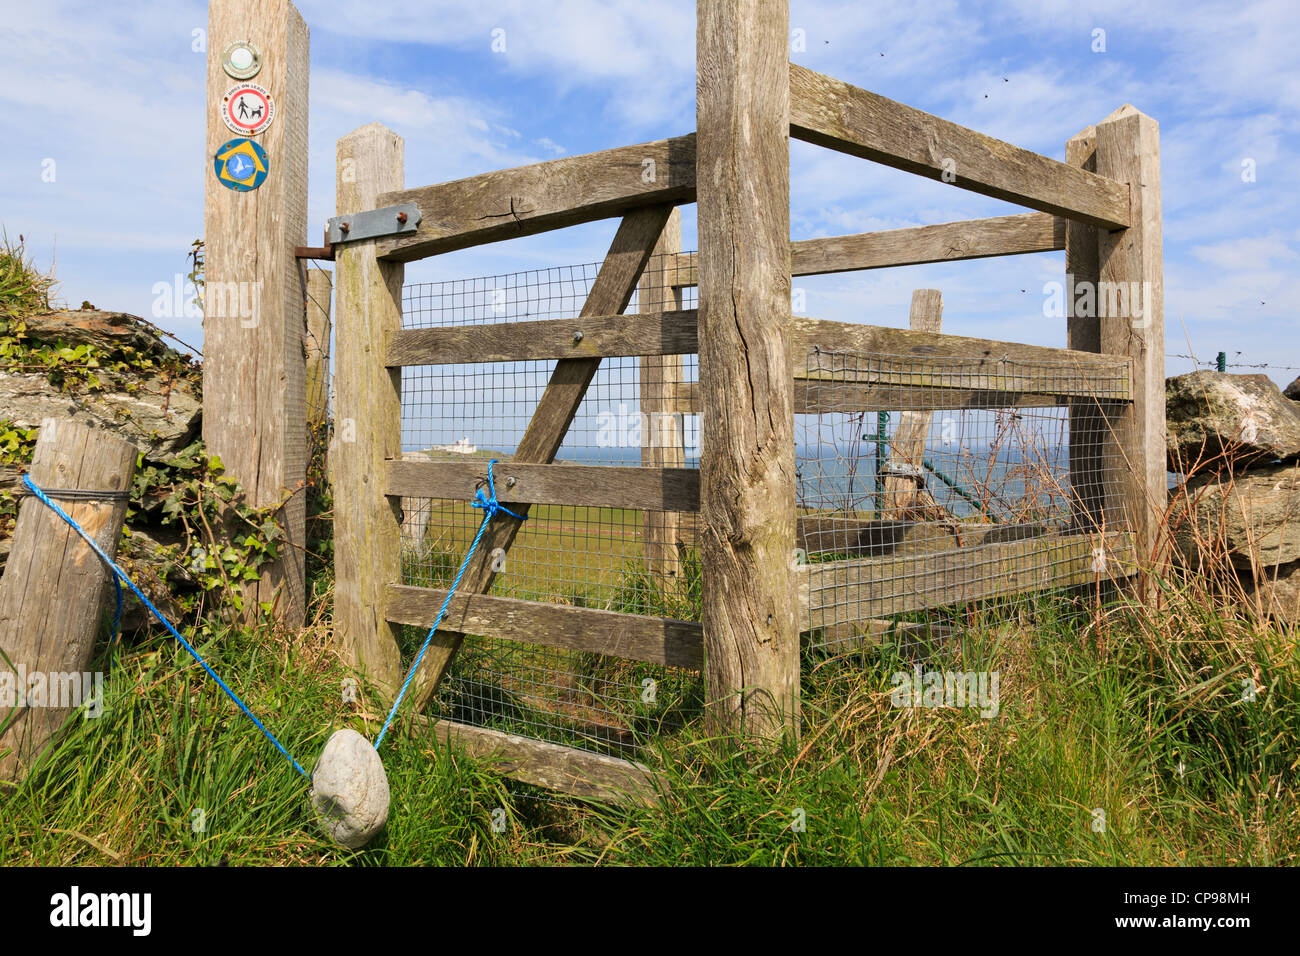 Un kissing gate sur l'île d'Anglesey Sentier du littoral avec un poids en pierre de la clôture. Llaneilian Anglesey au nord du Pays de Galles Royaume-uni Grande-Bretagne Banque D'Images